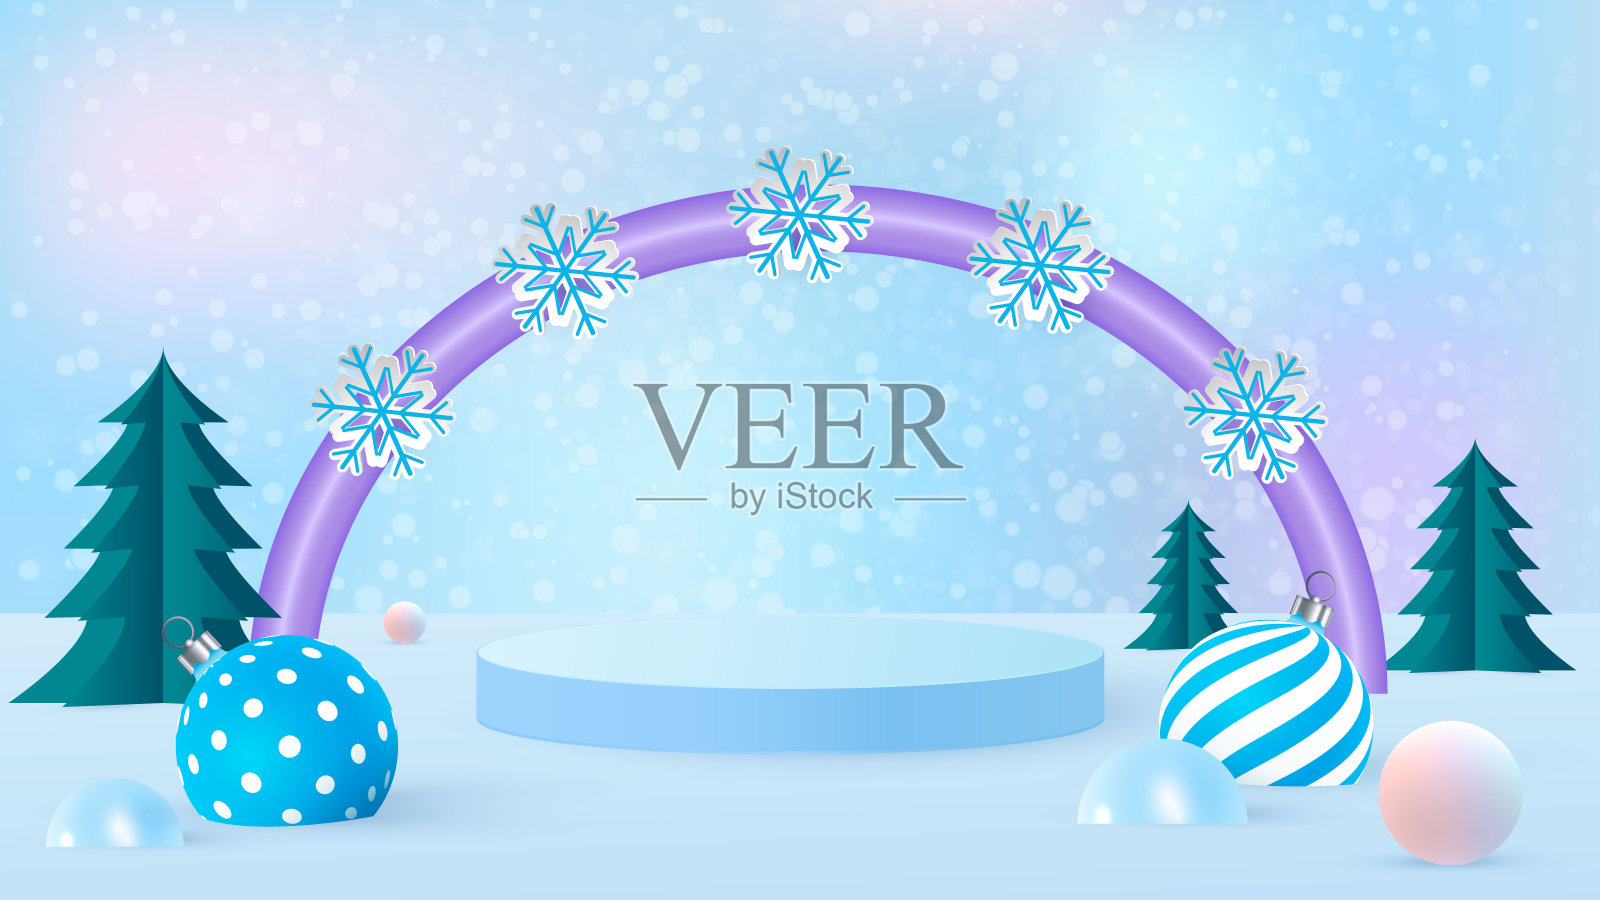 圣诞场景的产品介绍在蓝色背景与淡紫色拱门。圣诞树、新年装饰品和讲台。向量插画图片素材